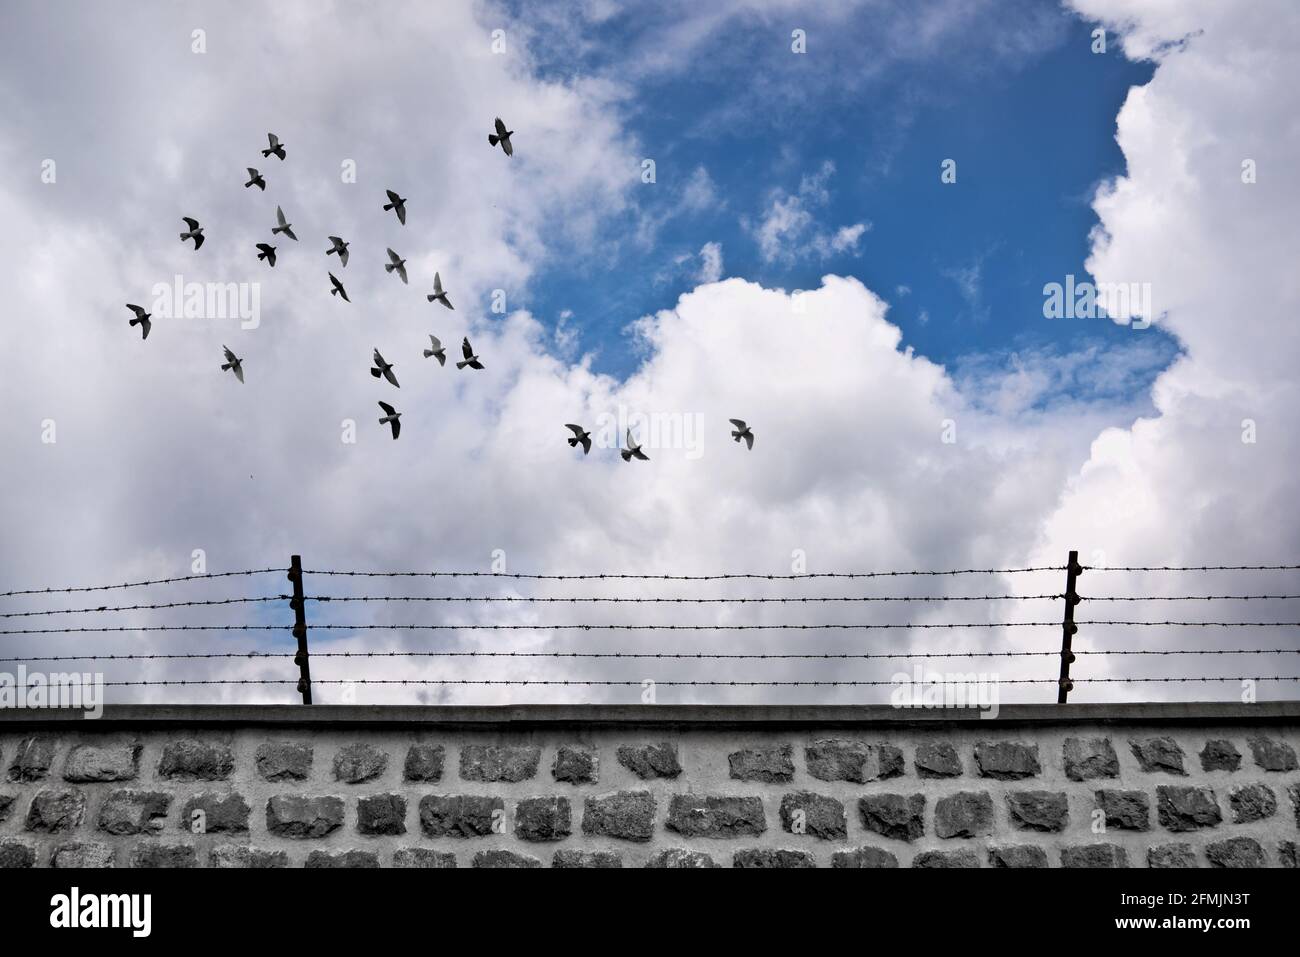 Schar von Vögeln, die eine Wand mit Barbdraht fliegen. Gefängnis- und Freiheitskonzept. Stockfoto